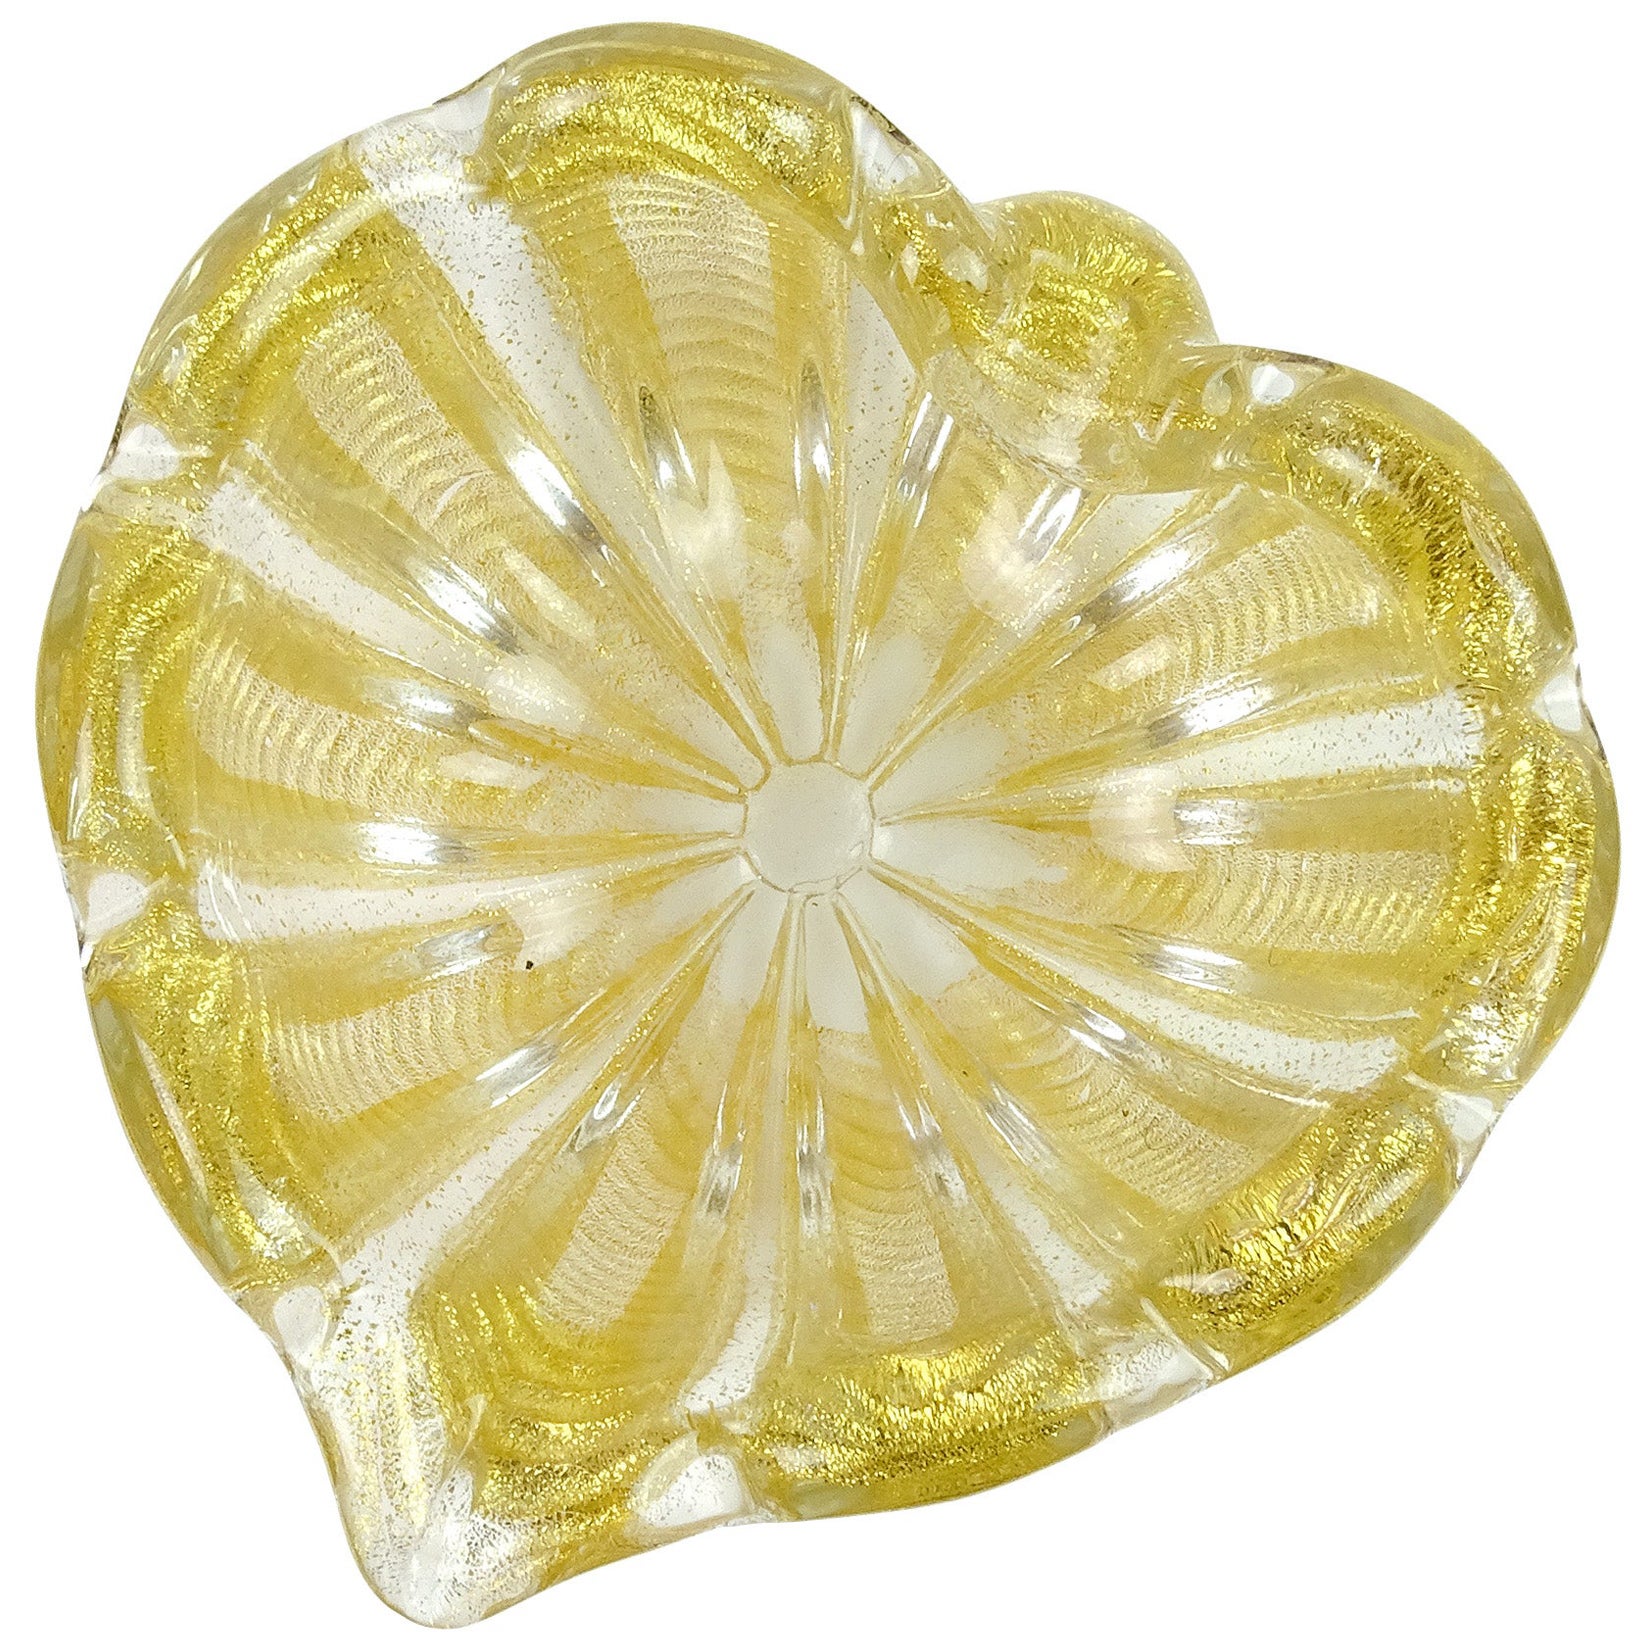 Bol en forme de cœur en verre d'art italien Barovier Toso Murano vintage avec mouchetures dorées